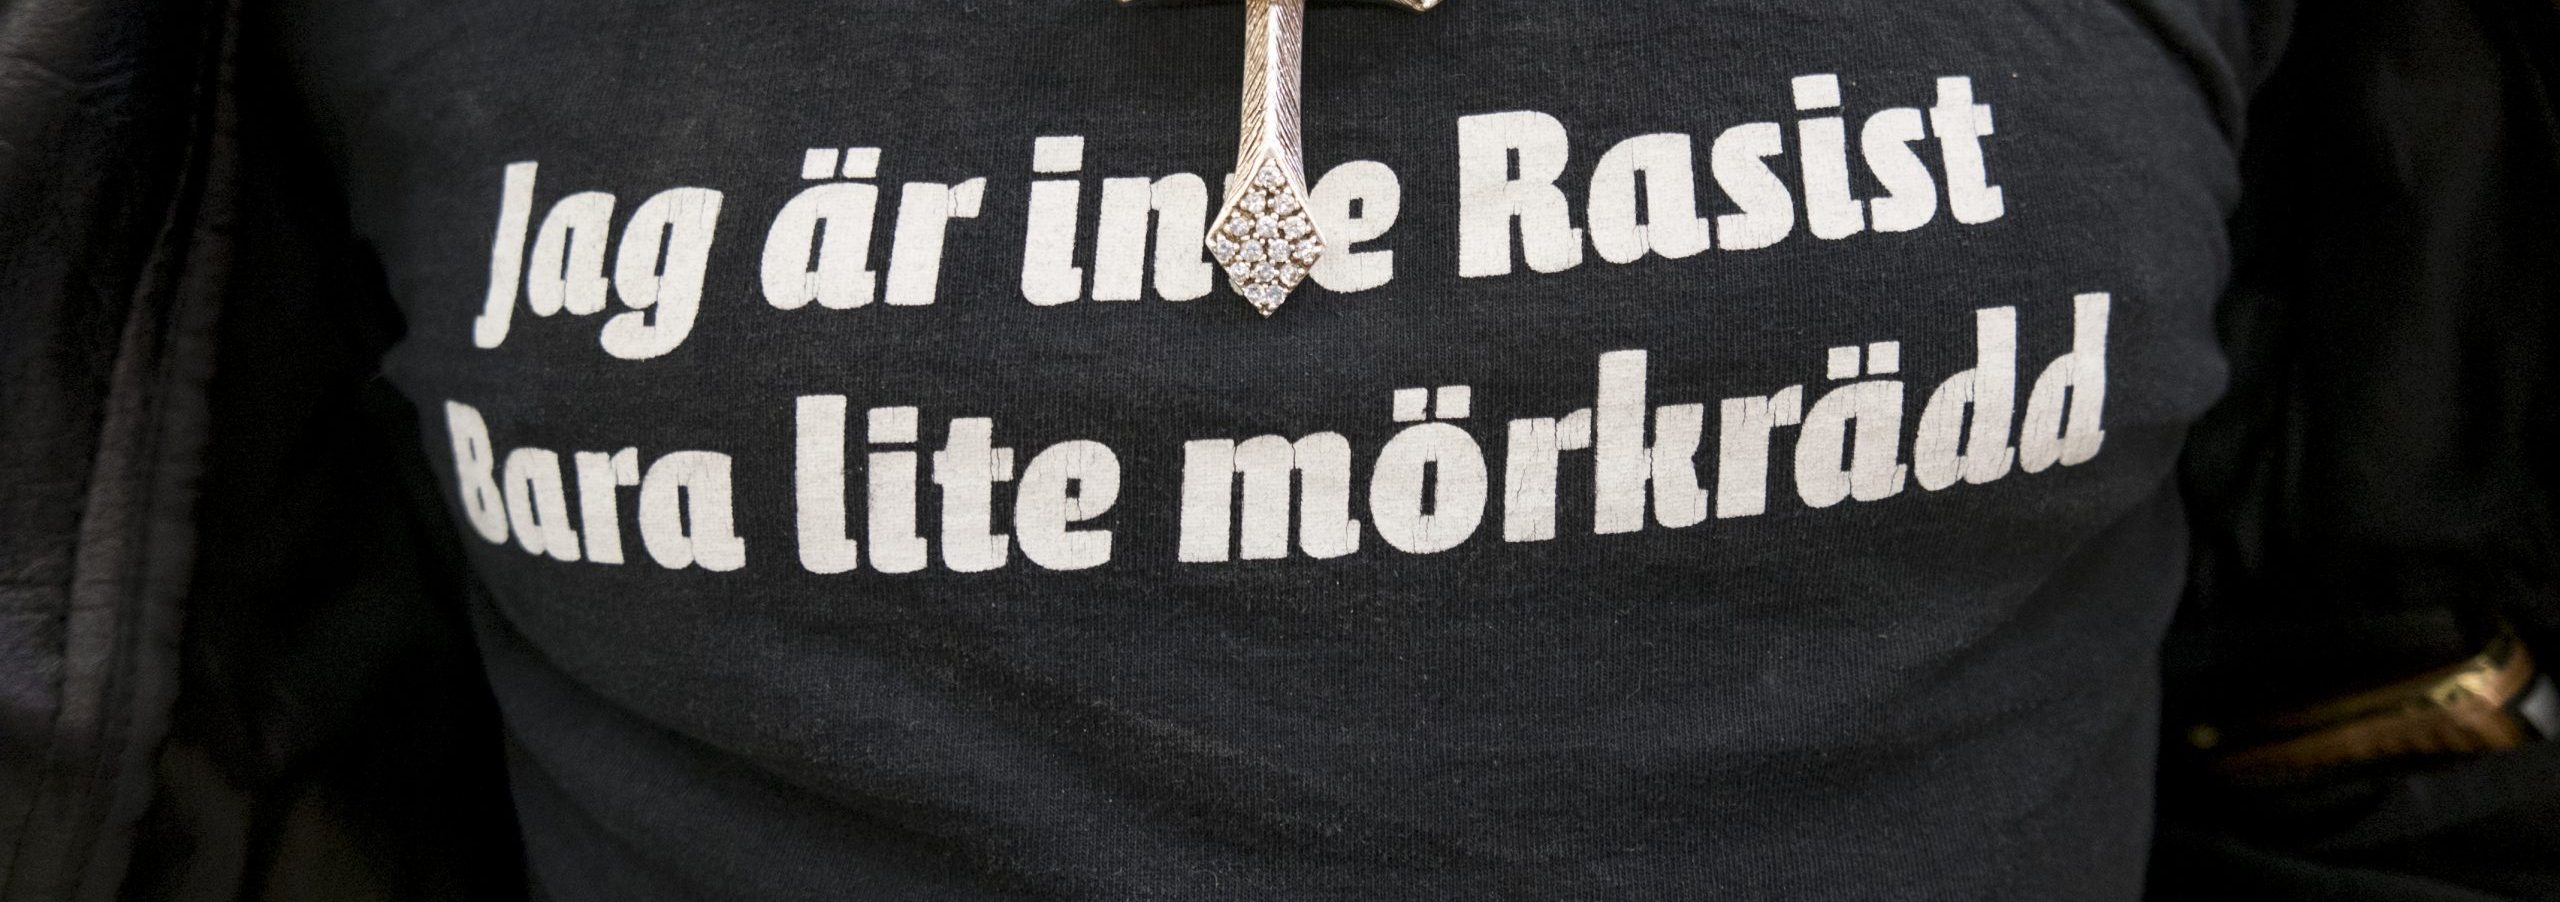 En bringa av en T-shirt med texten "Jag är inte Rasist, bara lite mörkrädd".